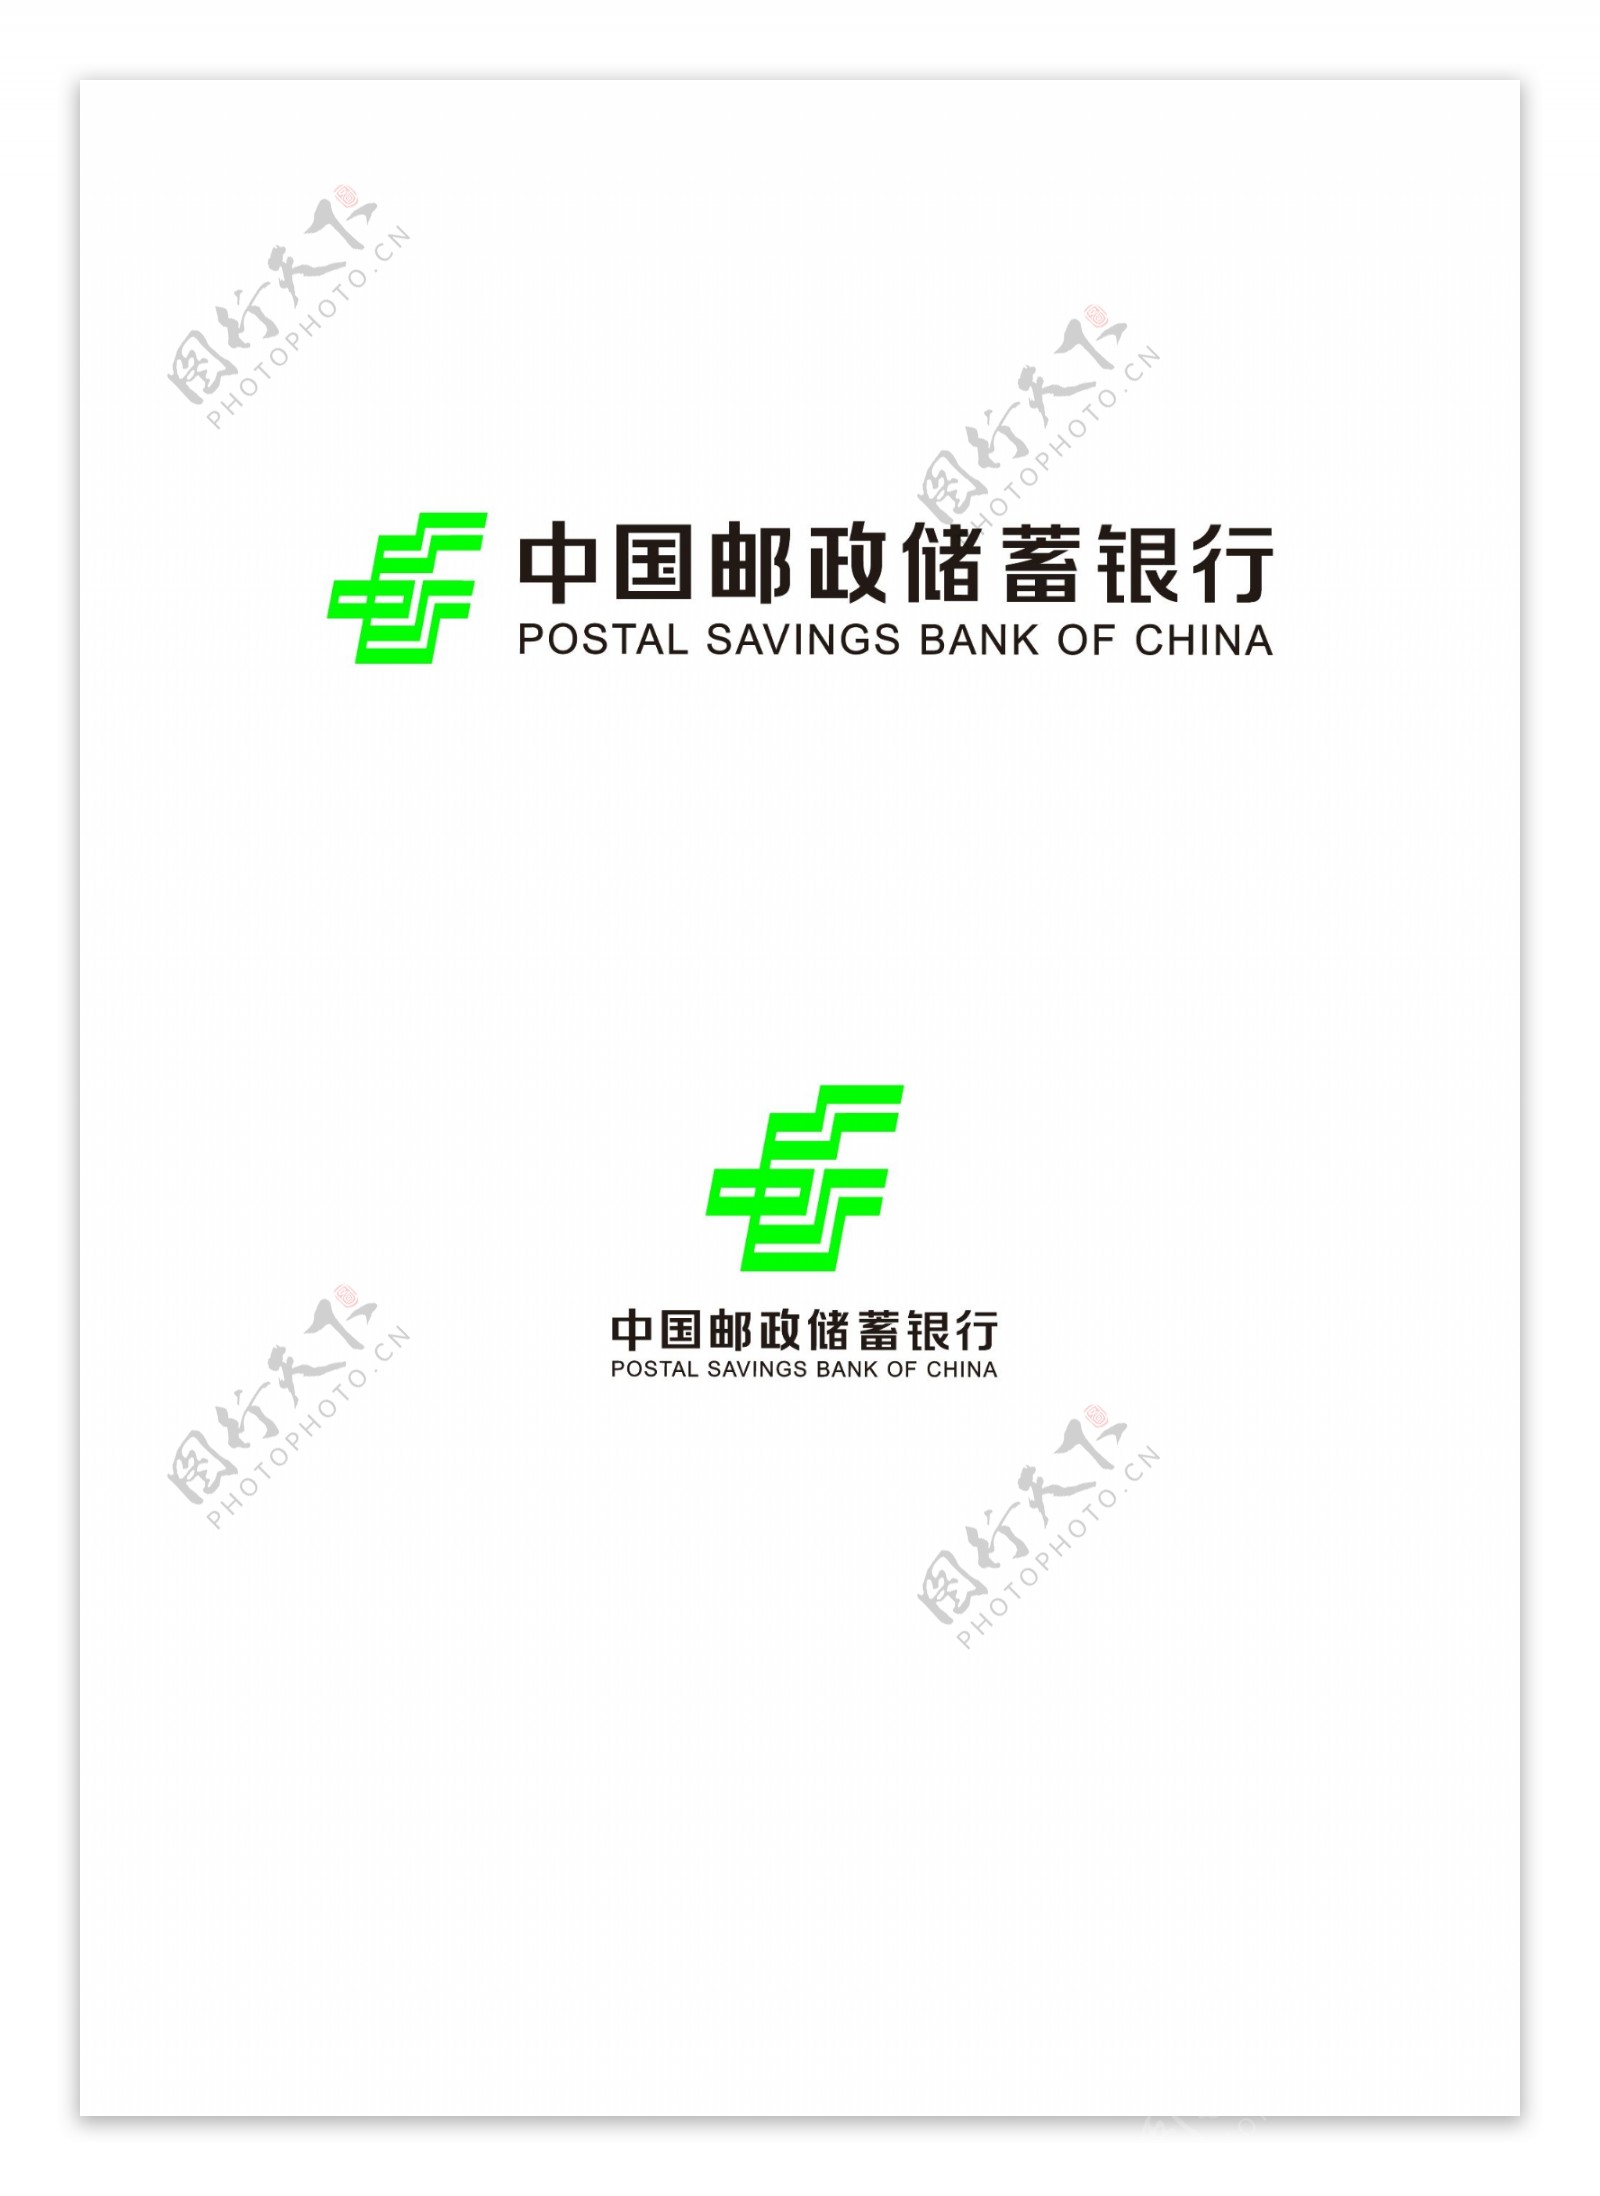 中国邮政储蓄银行新版logo图片